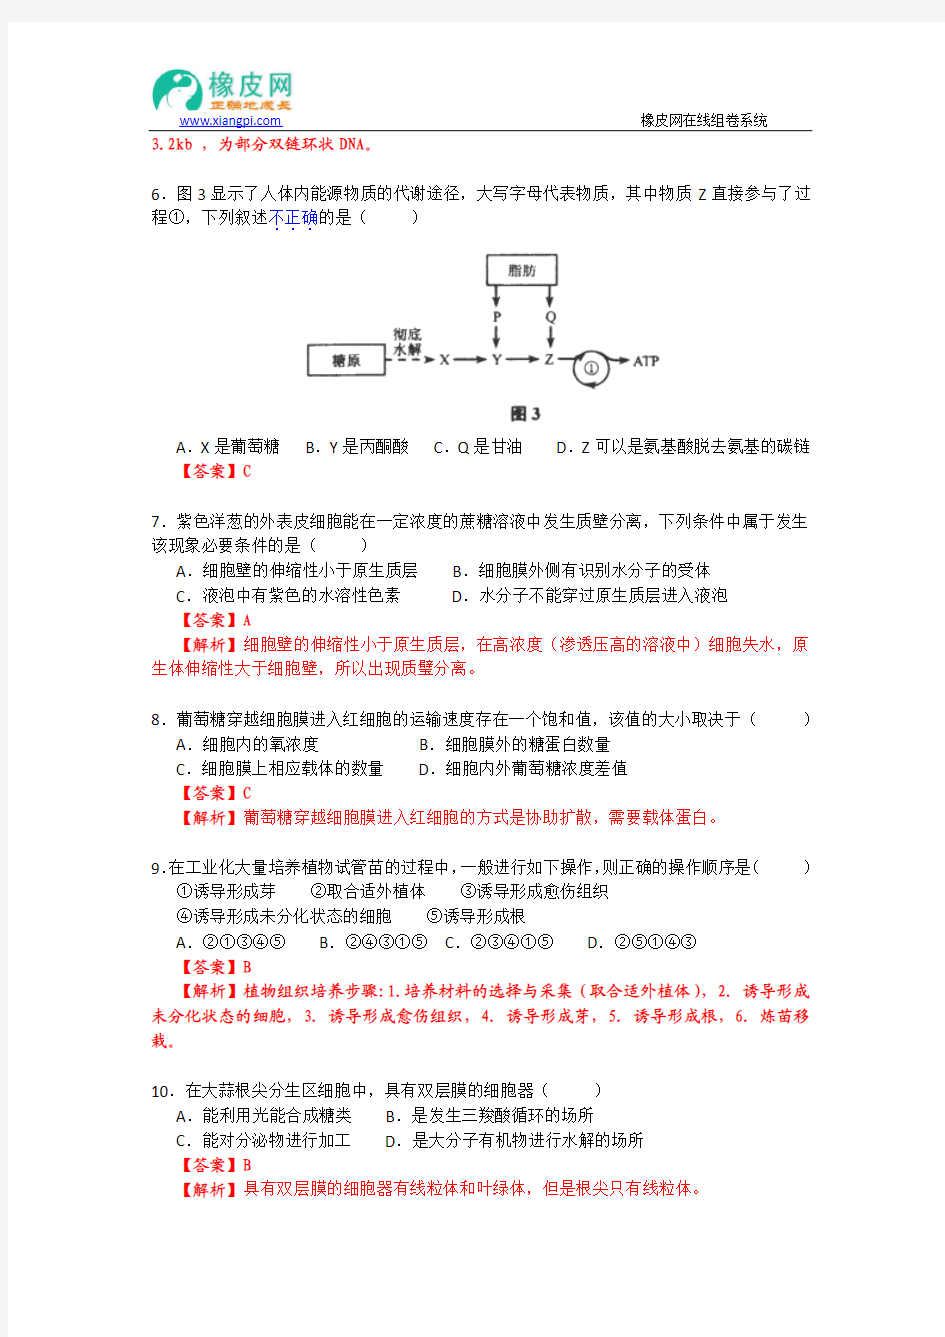 2013年高考真题----生物(上海卷)解析版 Word版含解析